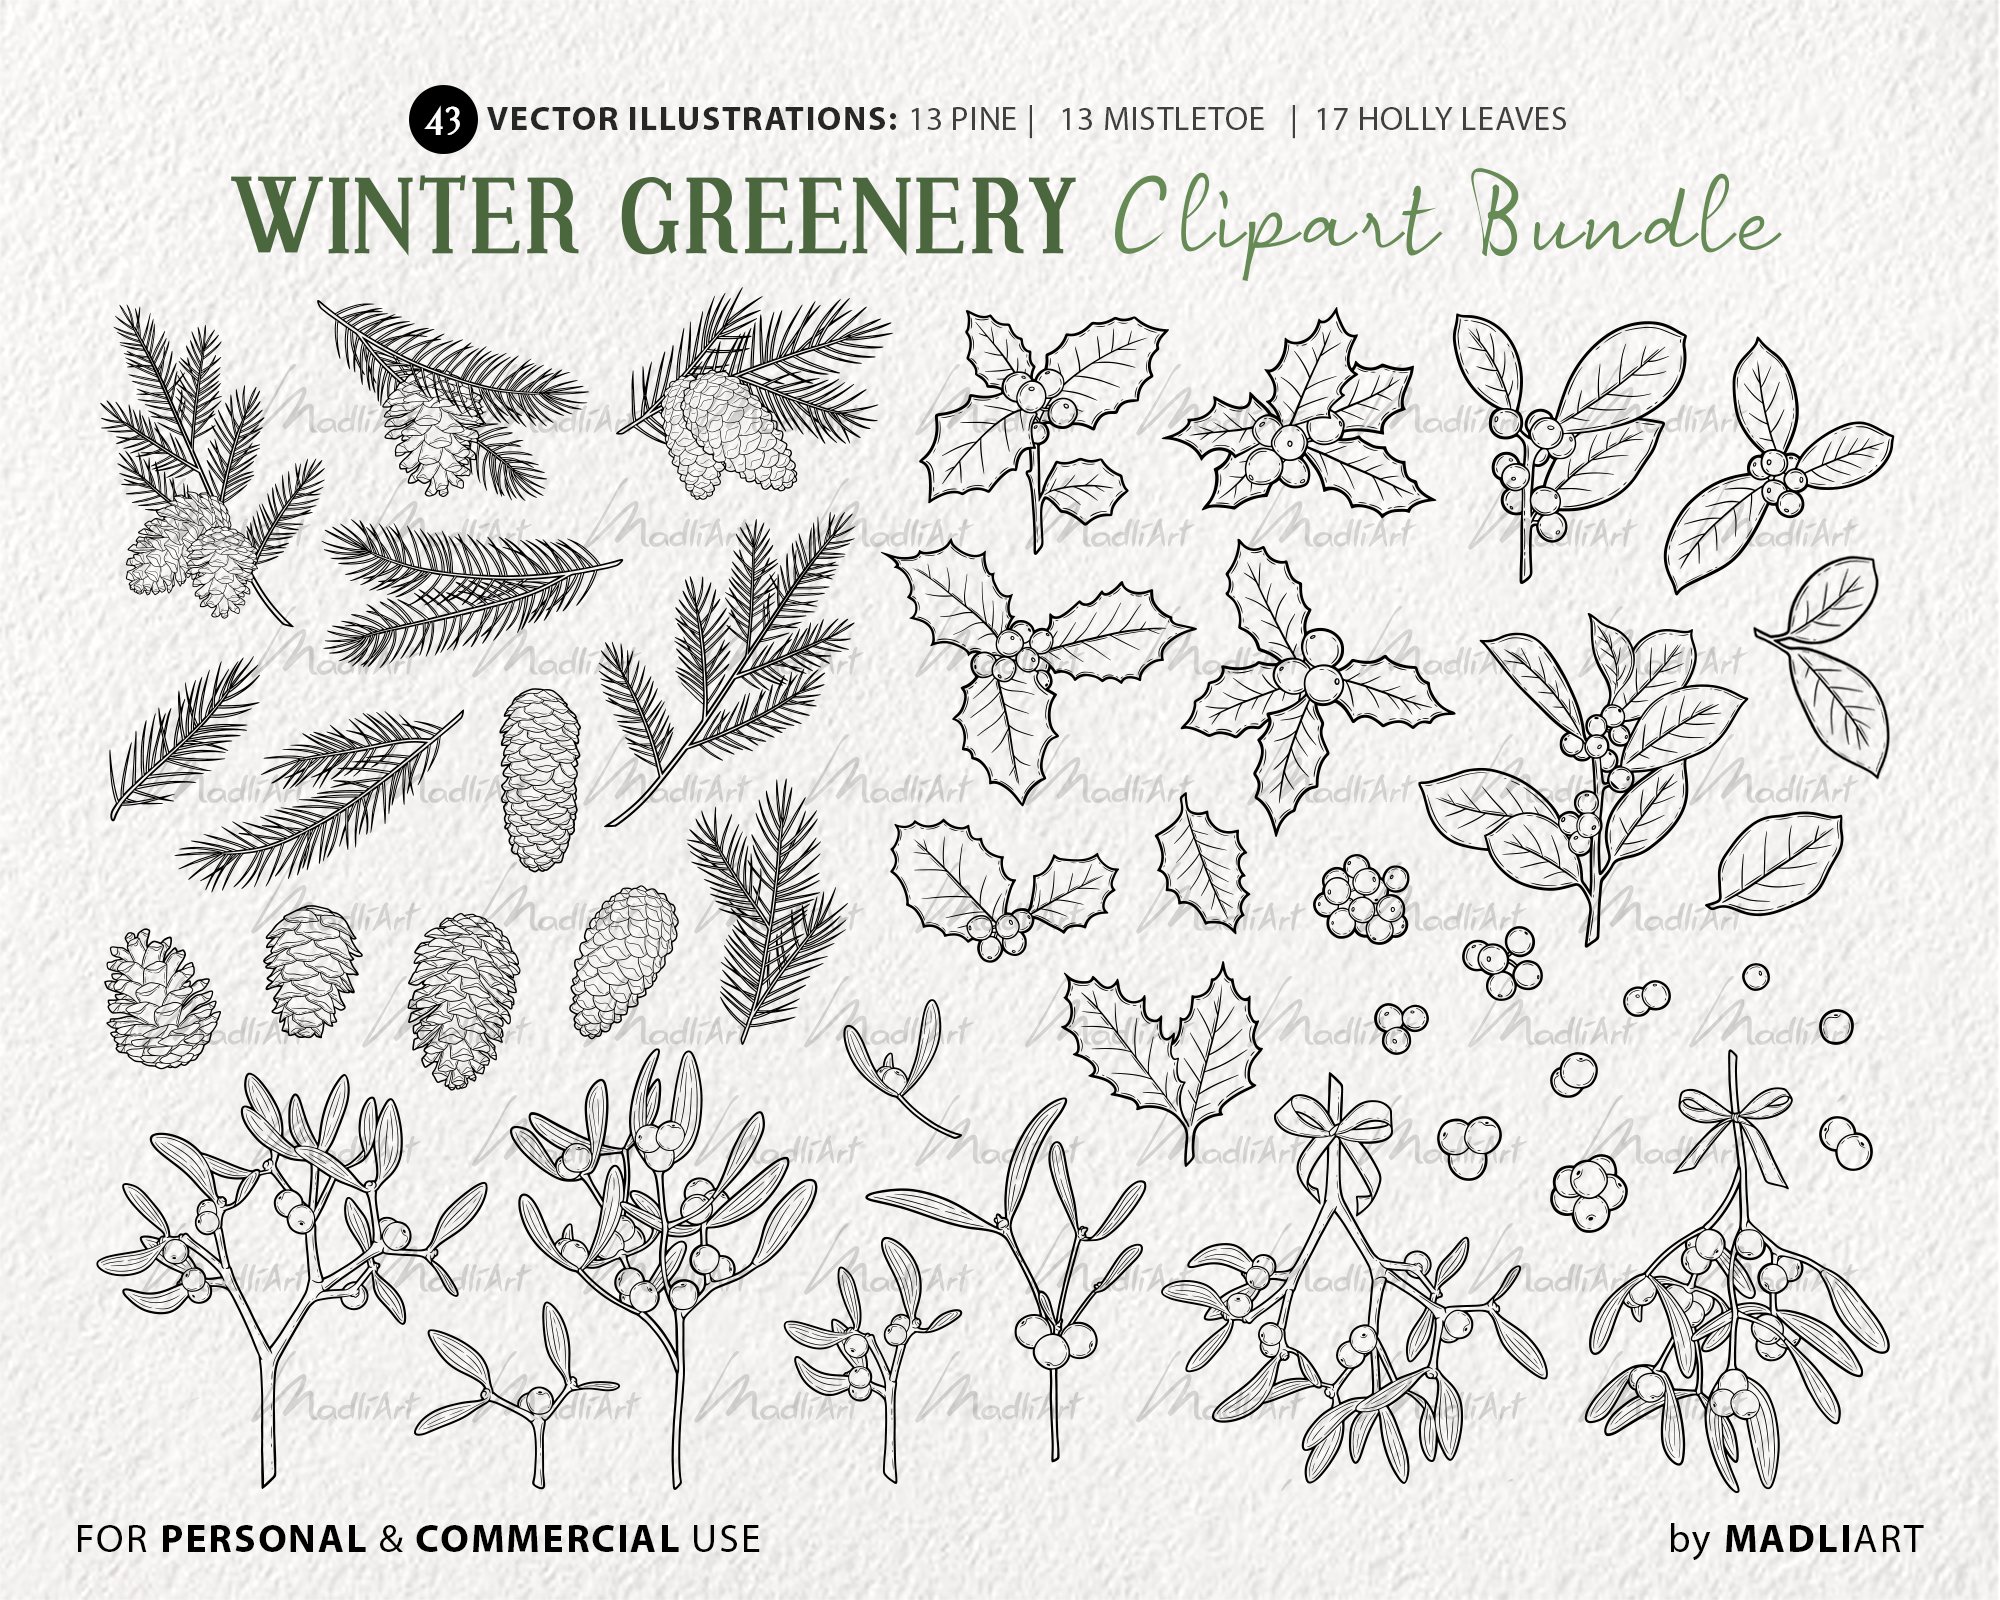 Winter Greenery Image Kit